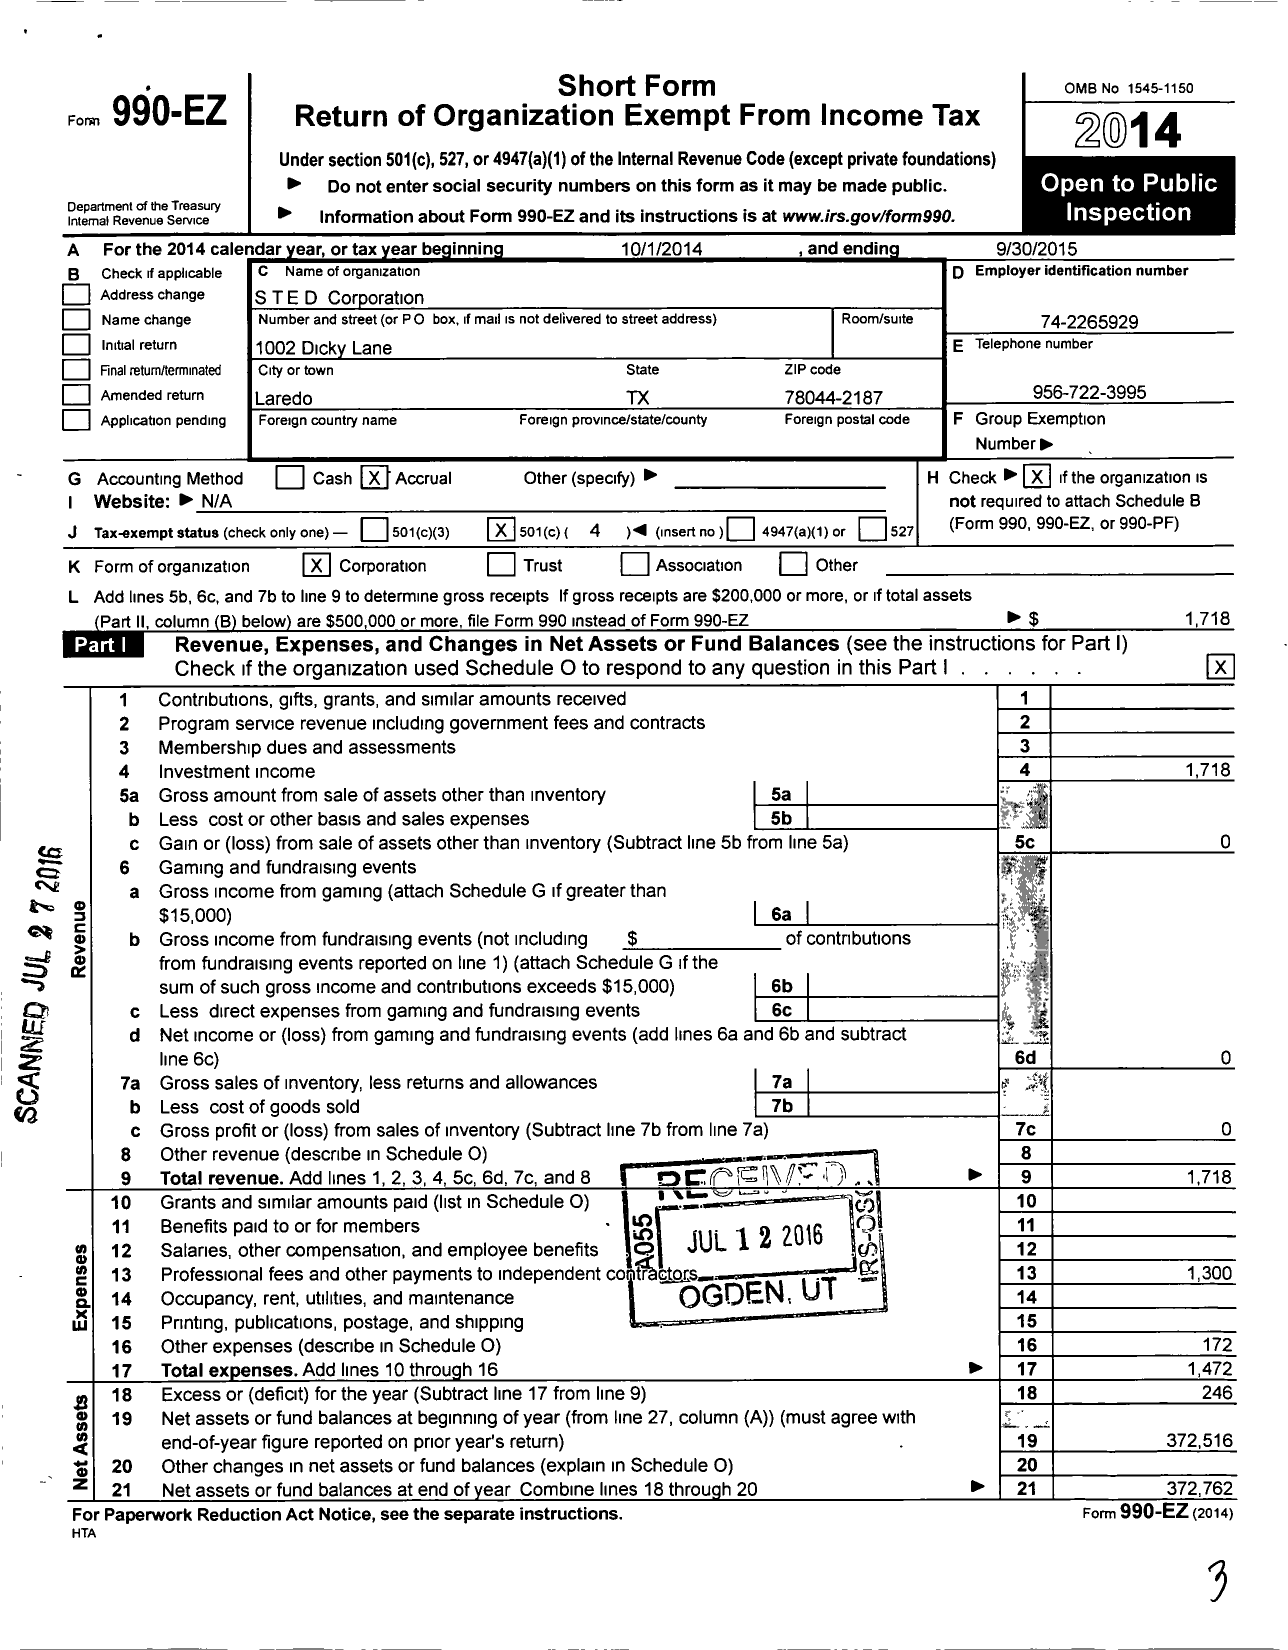 Image of first page of 2014 Form 990EO for The S T E D Corporation